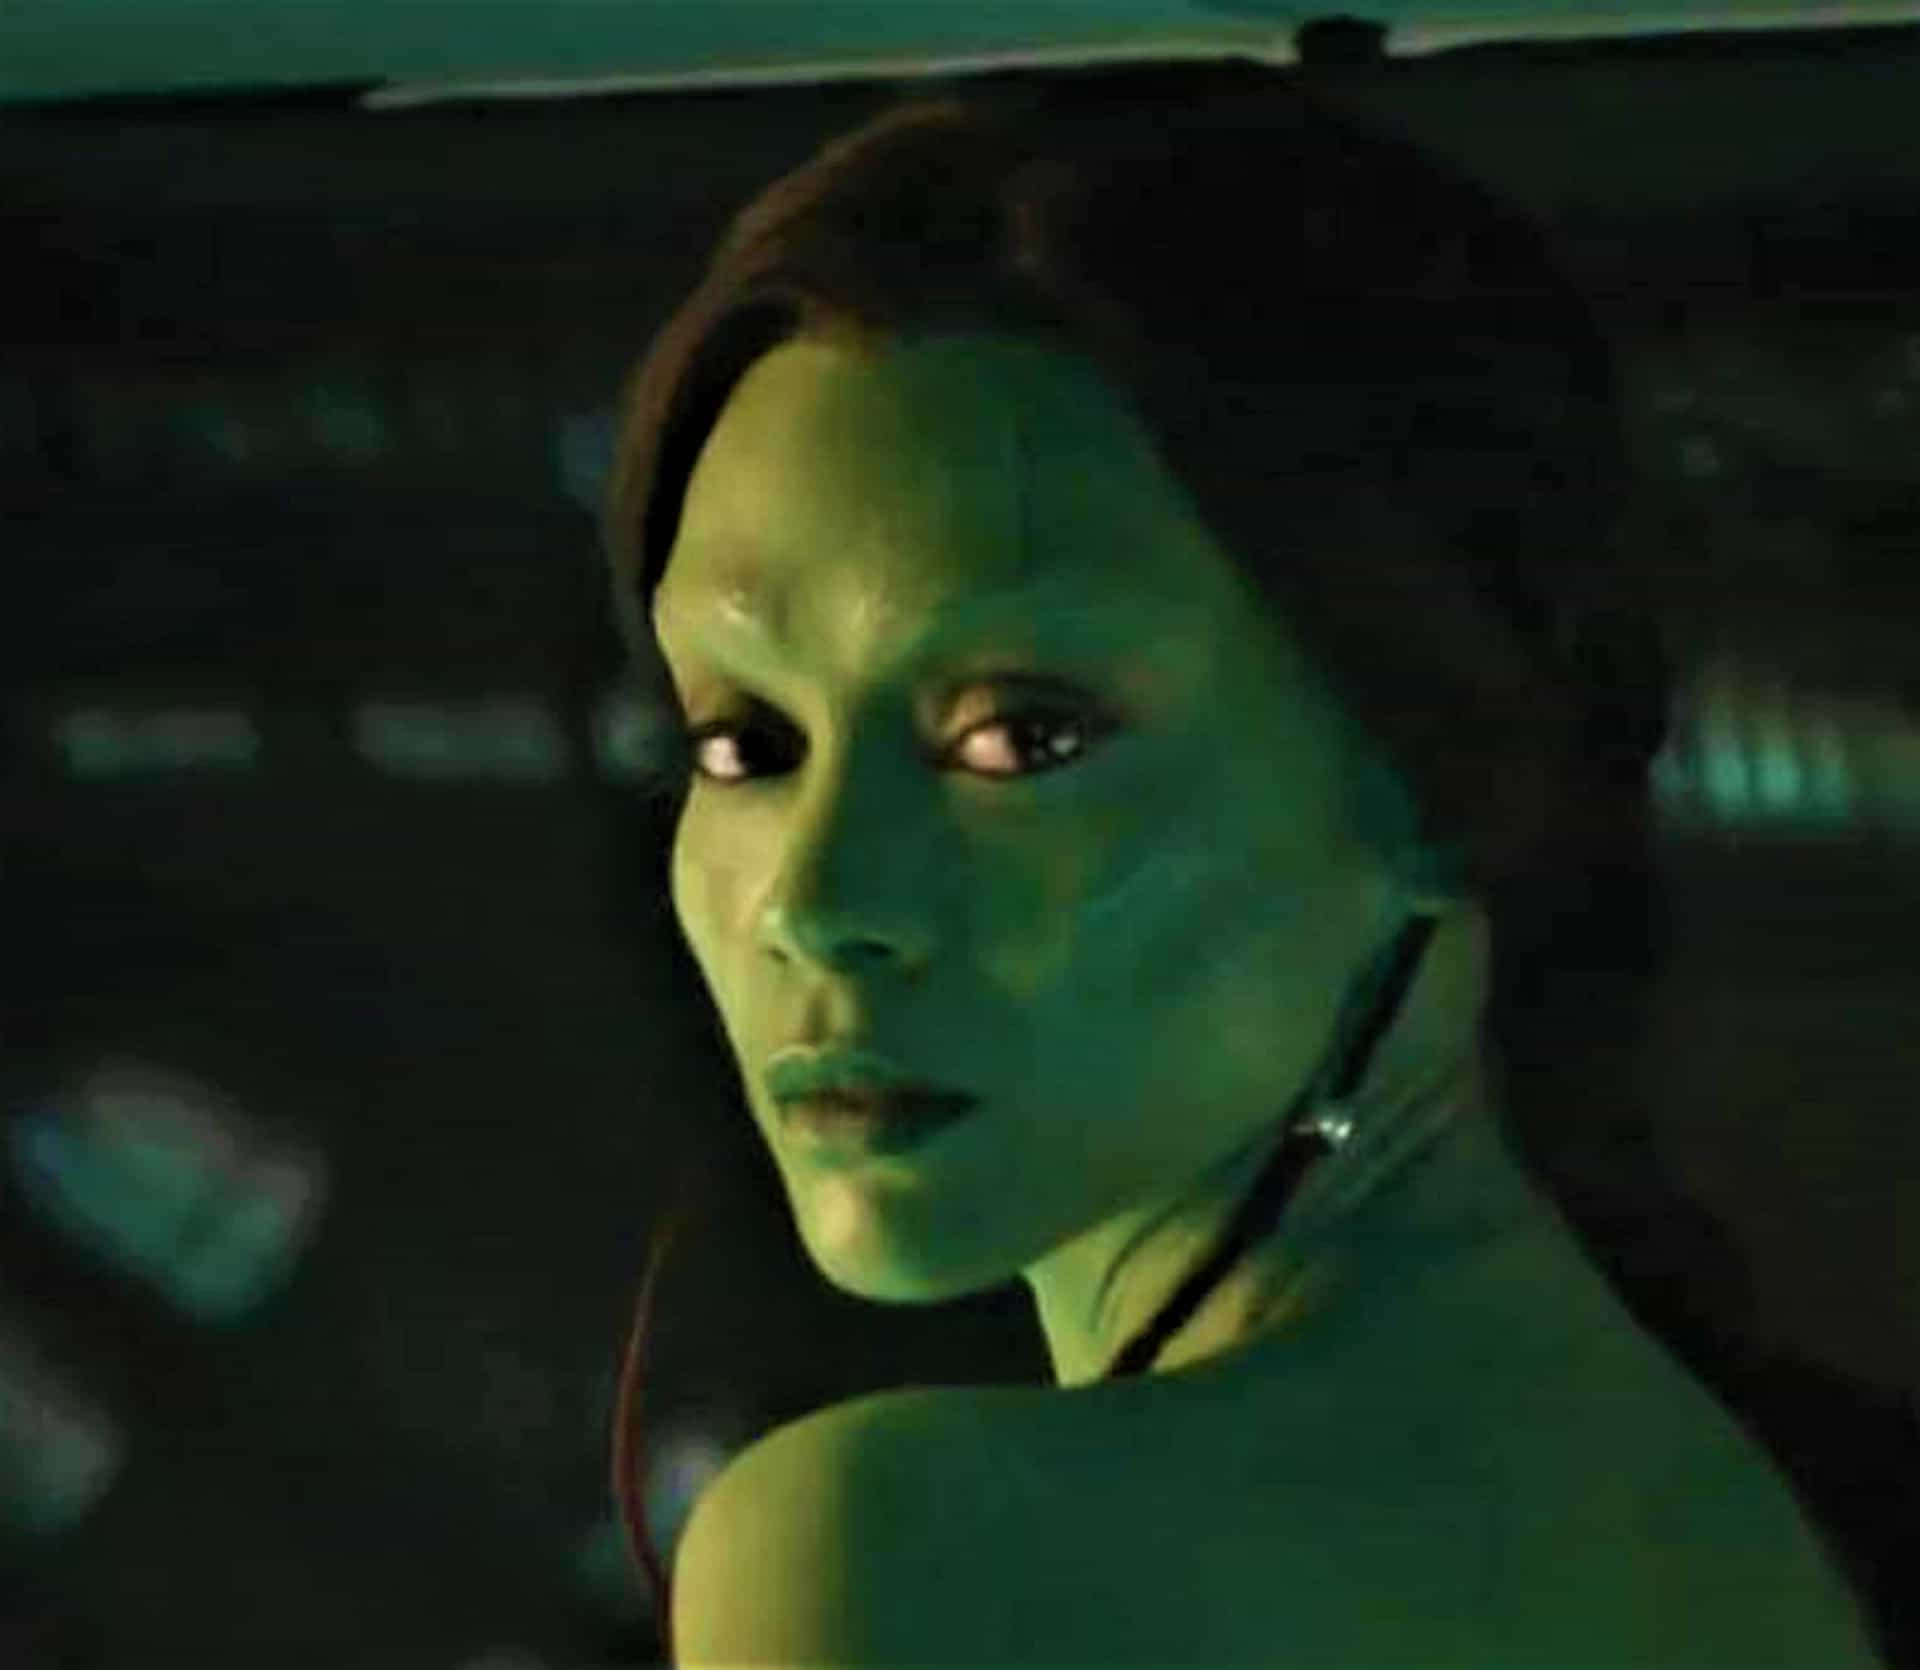 Thanos und Gamora sprechen über ihre komplizierte Beziehung, Gamora gibt zu, dass ihr Selbsthass verschwand, als sie sich den Guardians of the Galaxy anschloss und erfuhr, dass sie der Liebe würdig ist, und Thanos sagt, dass er einsam war, bevor sie kam, obwohl er immer noch versucht, ihre Gefühle zu manipulieren – aber all das wurde nur als gelöschte Szene von MCU veröffentlicht.<p>Sie können auch mögen:<a href="https://de.starsinsider.com/n/466461?utm_source=msn.com&utm_medium=display&utm_campaign=referral_description&utm_content=492960v1"> Kannibalen und Krokodile: Das sind die tödlichsten Flüsse der Welt</a></p>